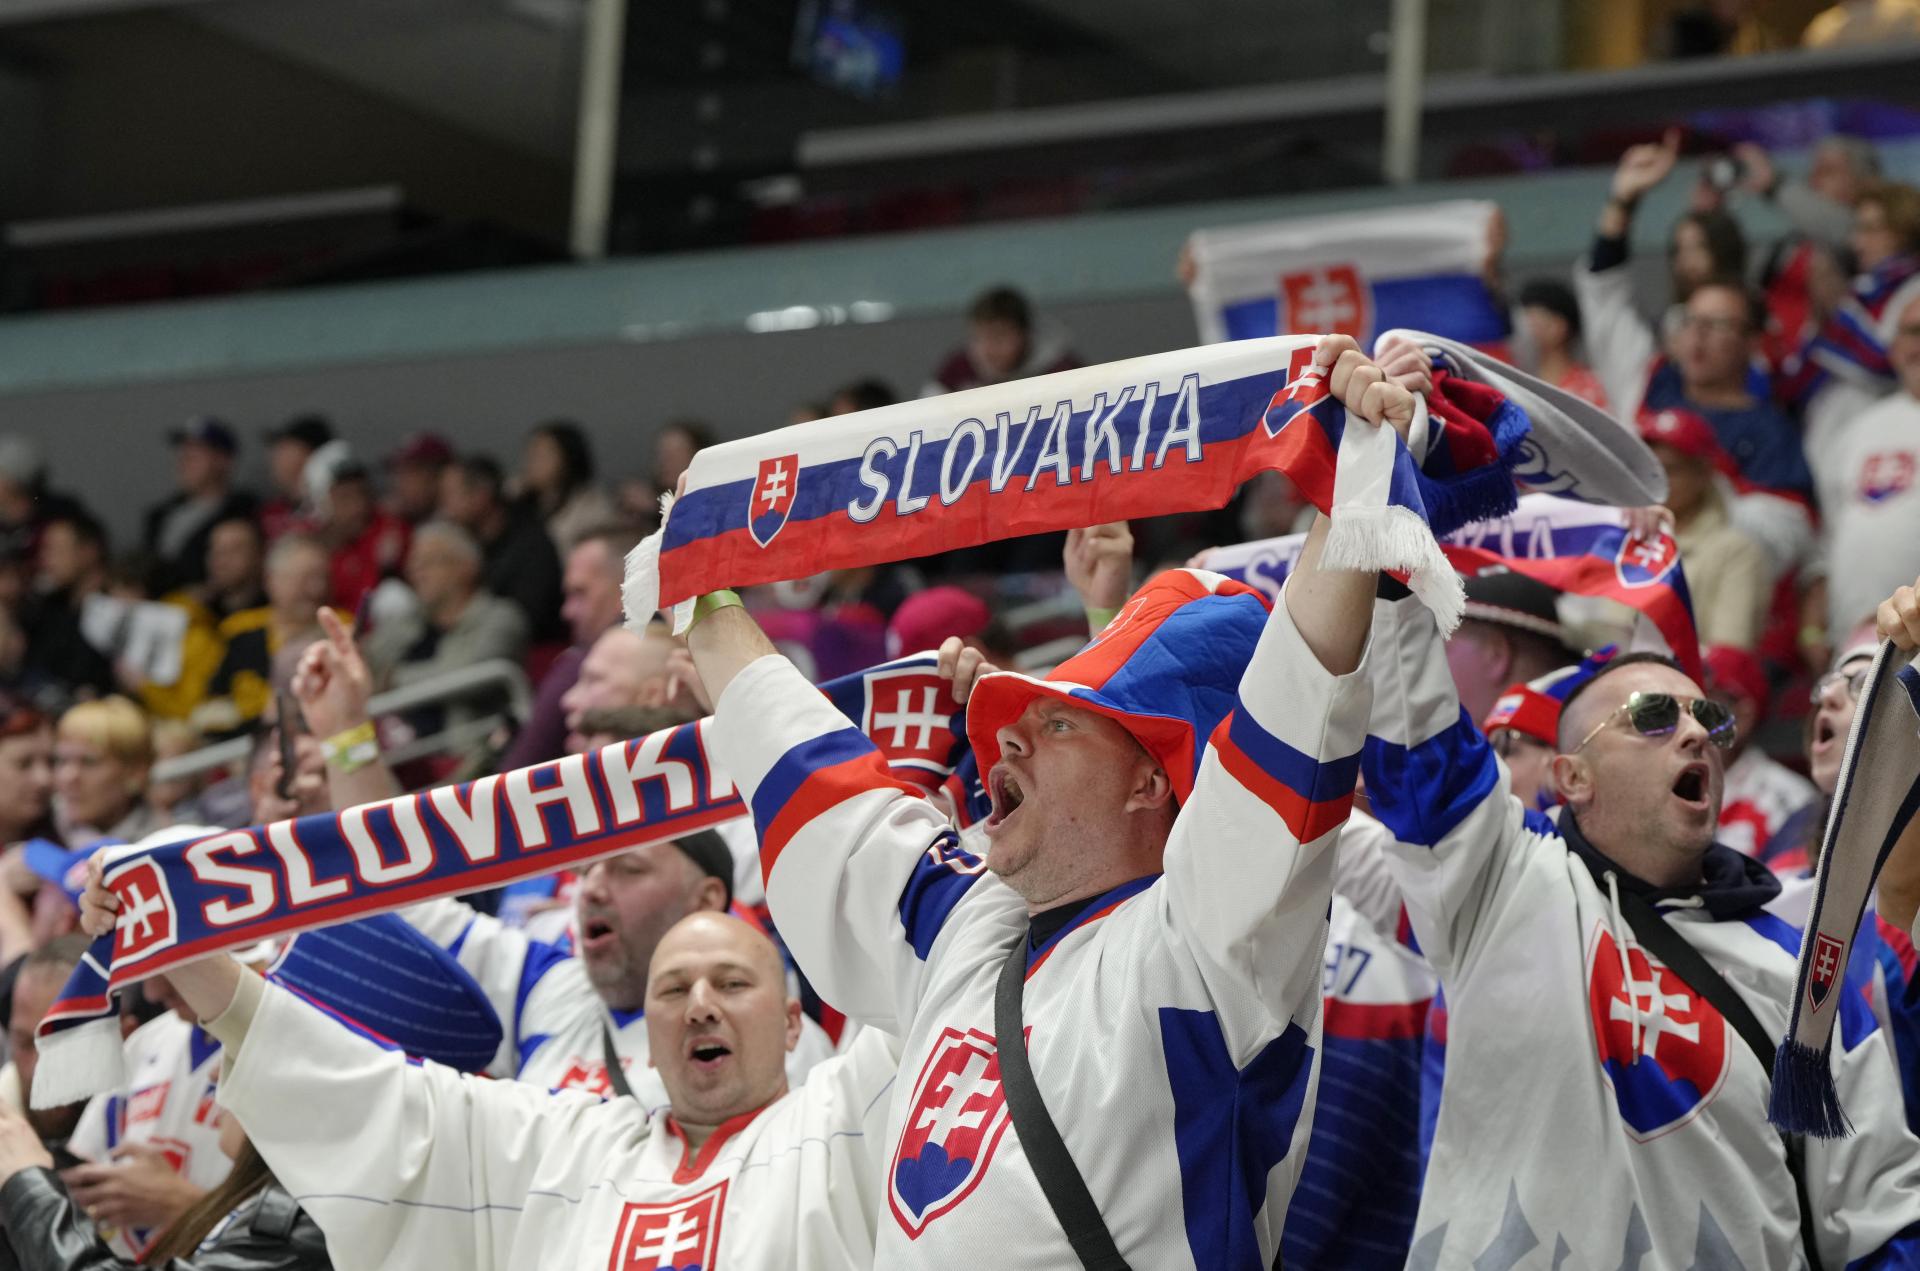 MS v hokeji: Slováci hrajú o dôležité body proti outsiderovi z Kazachstanu. Sledujeme online